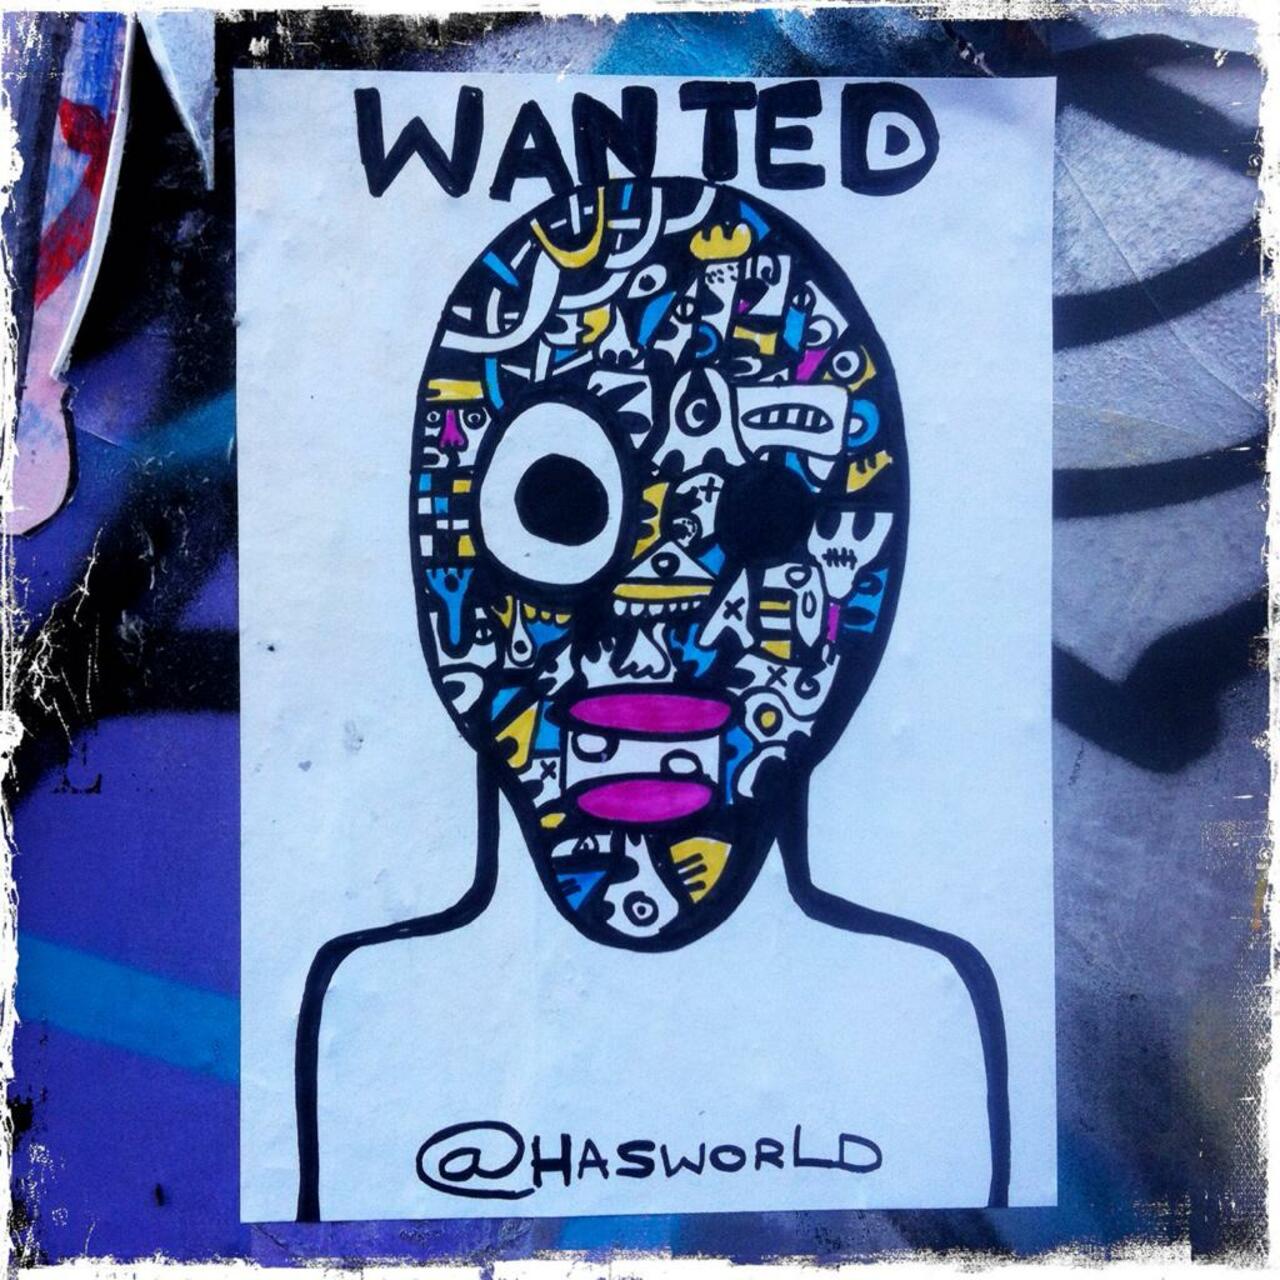 RT @BrickLaneArt: Wanted - @hasworld0 paste-up on Grimsby Street

#art #graffiti #streetart http://t.co/vGI8Av1WSs